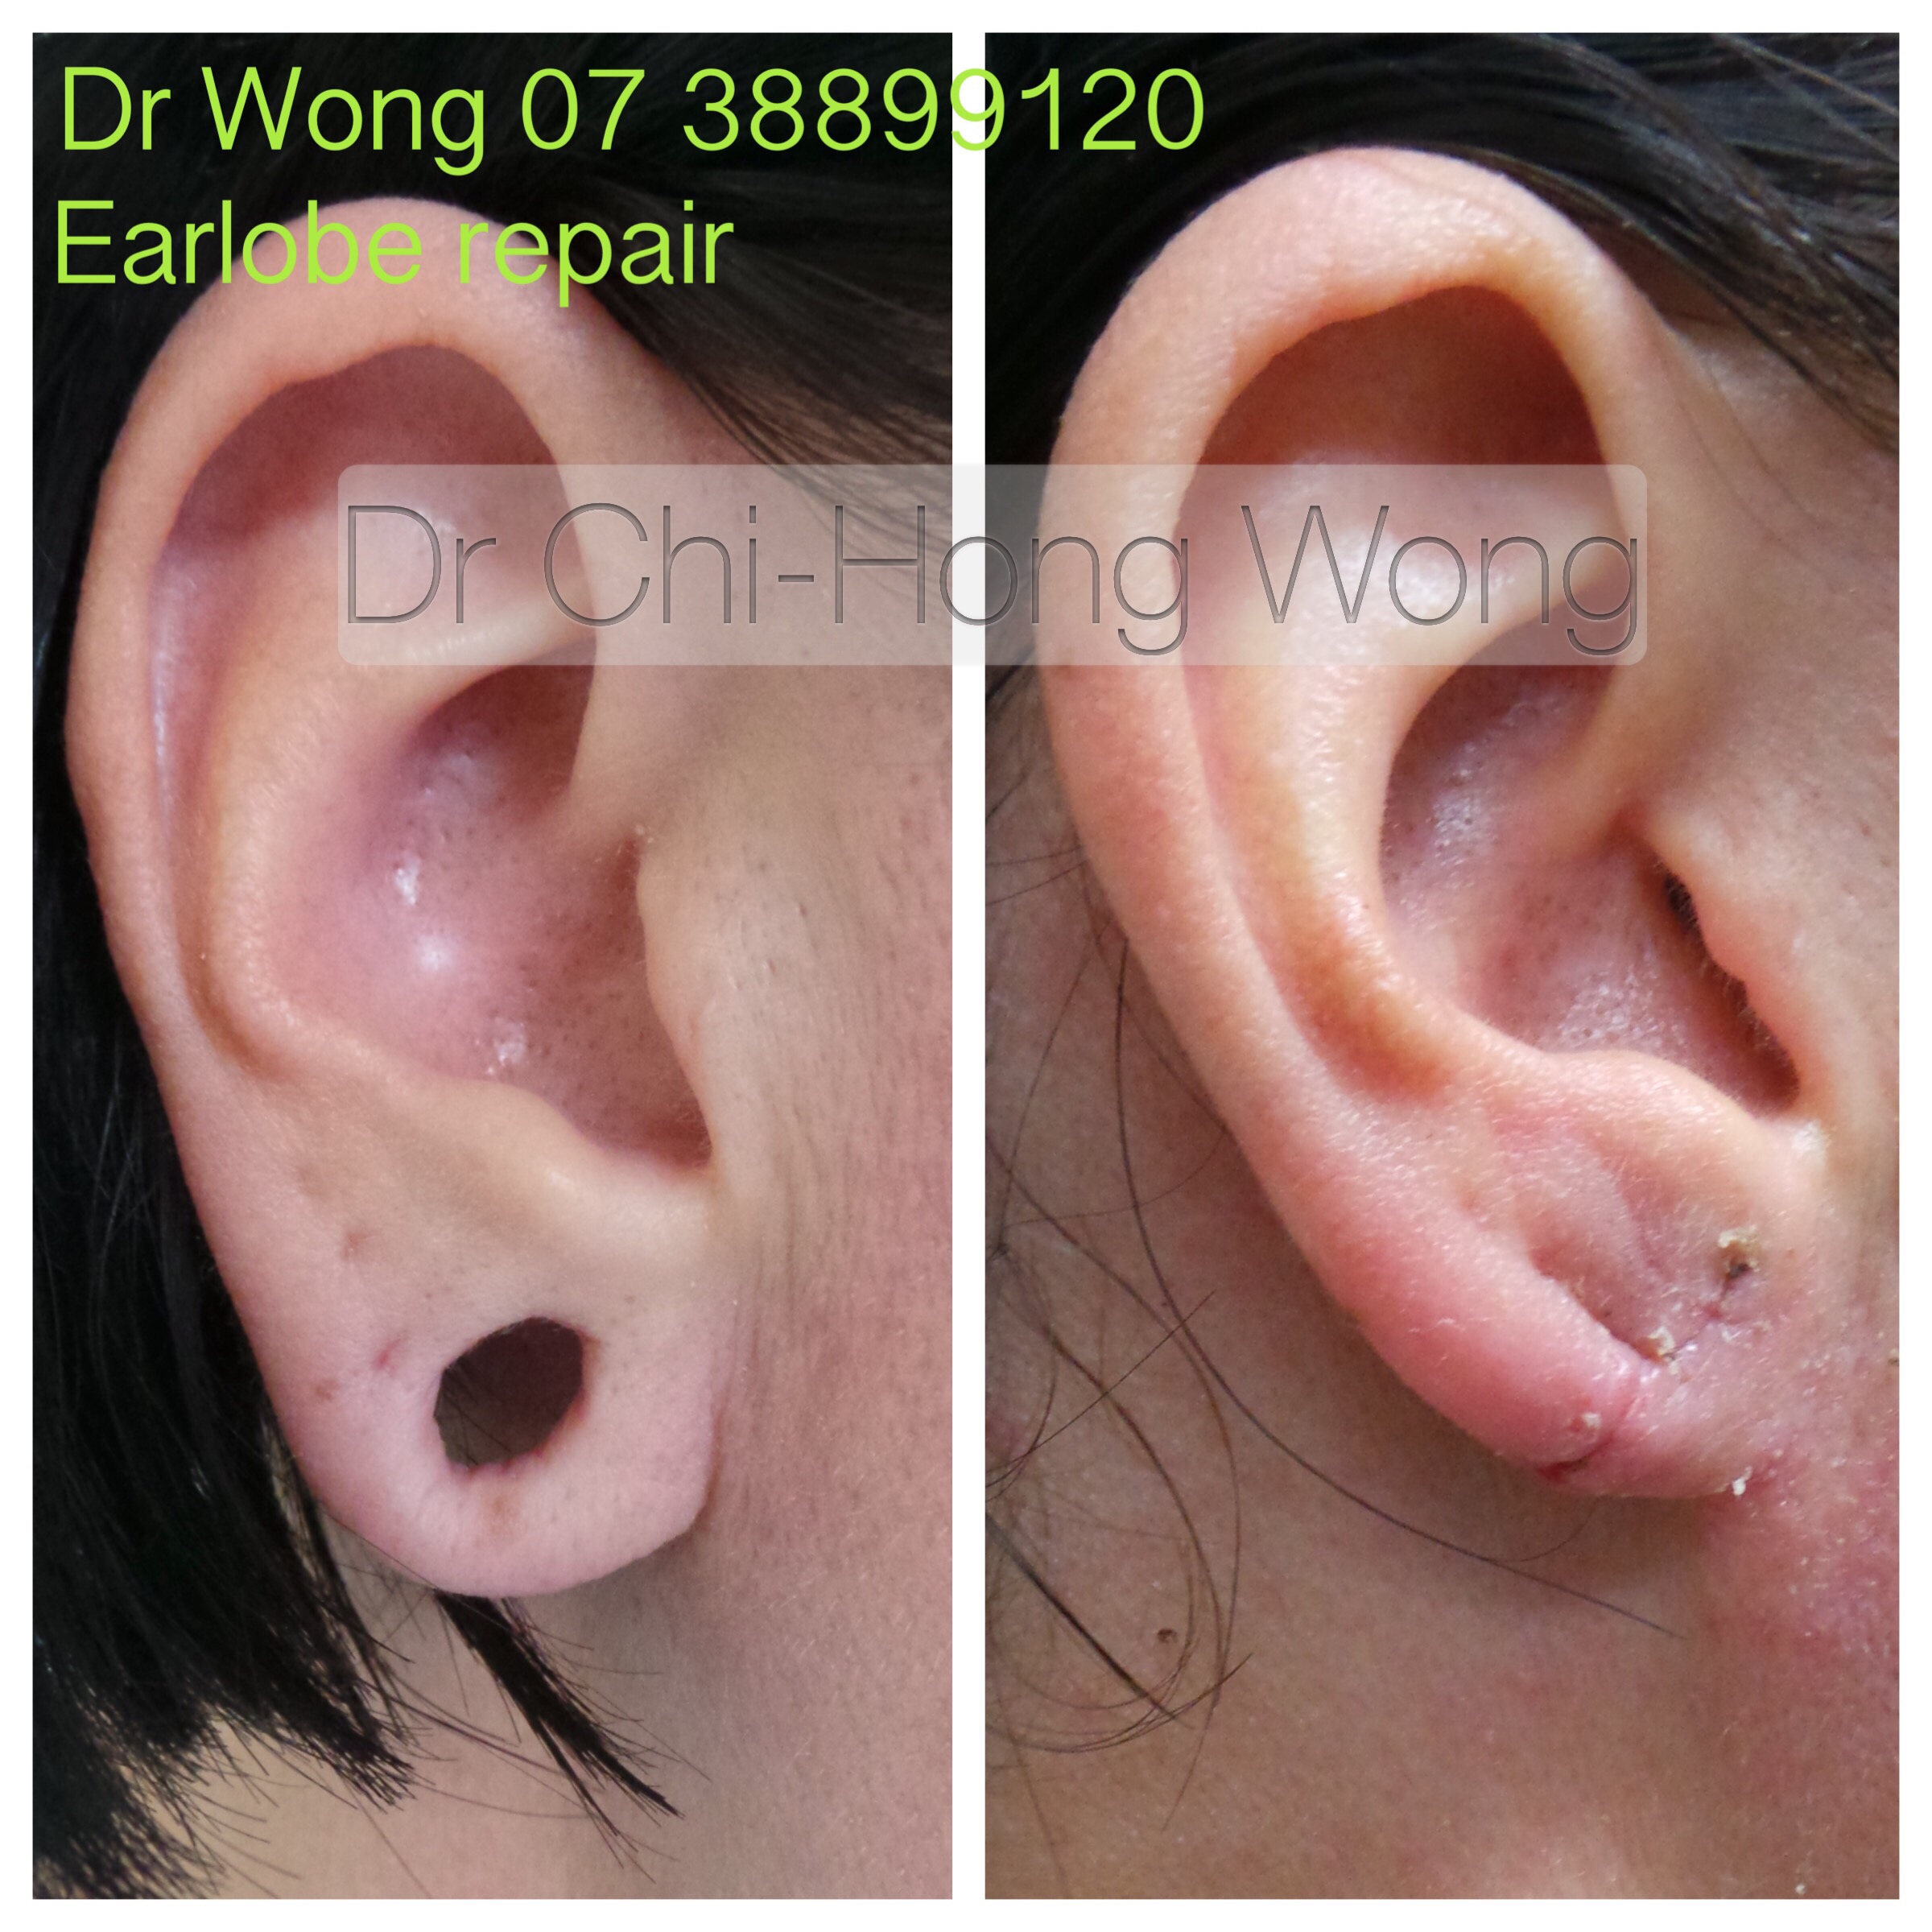 10 days after Ear lobe repair